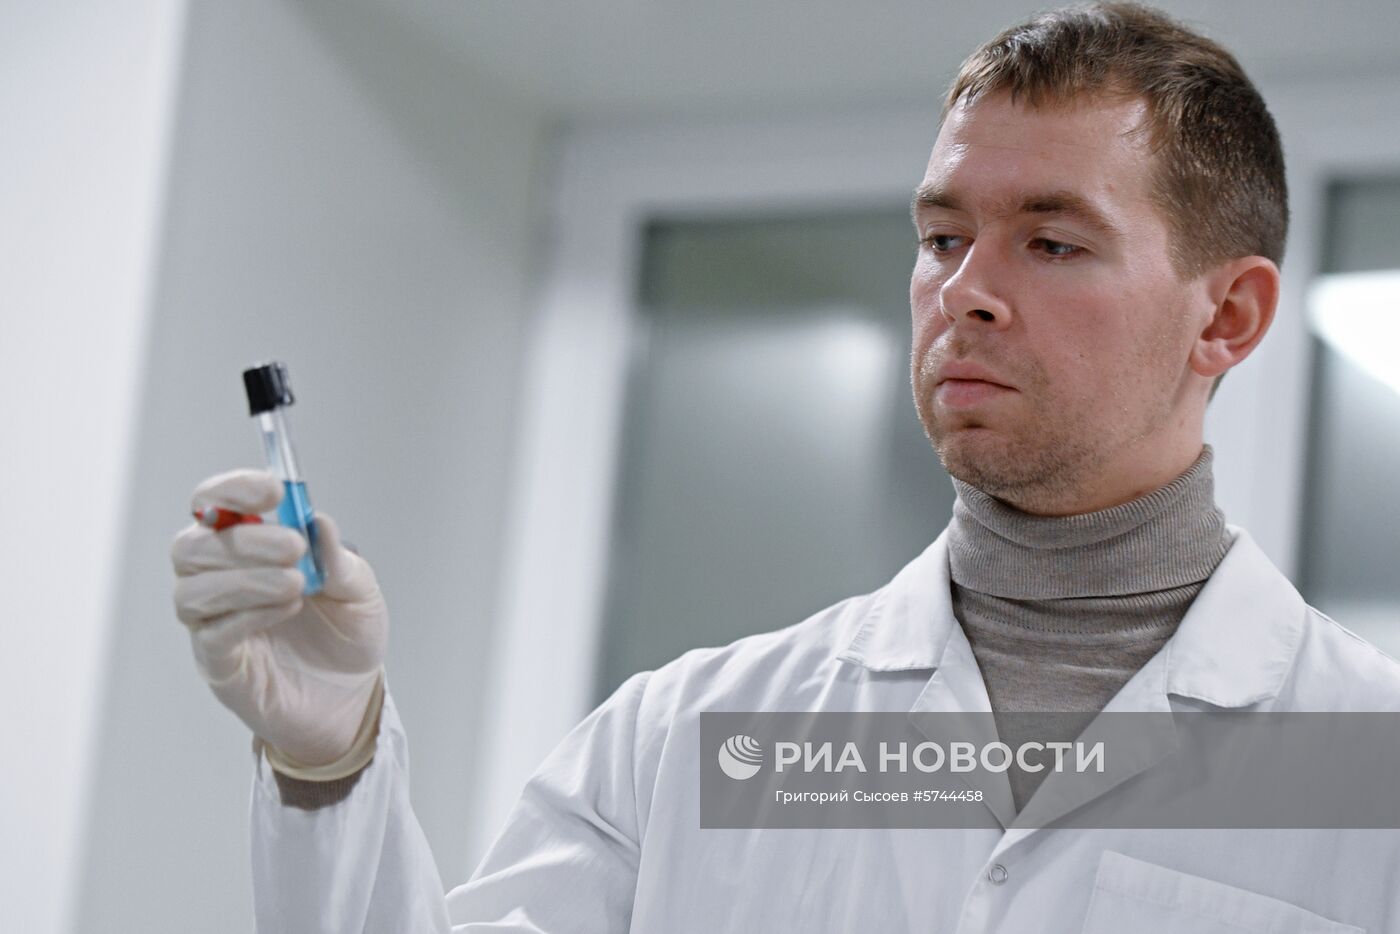 Московская антидопинговая лаборатория